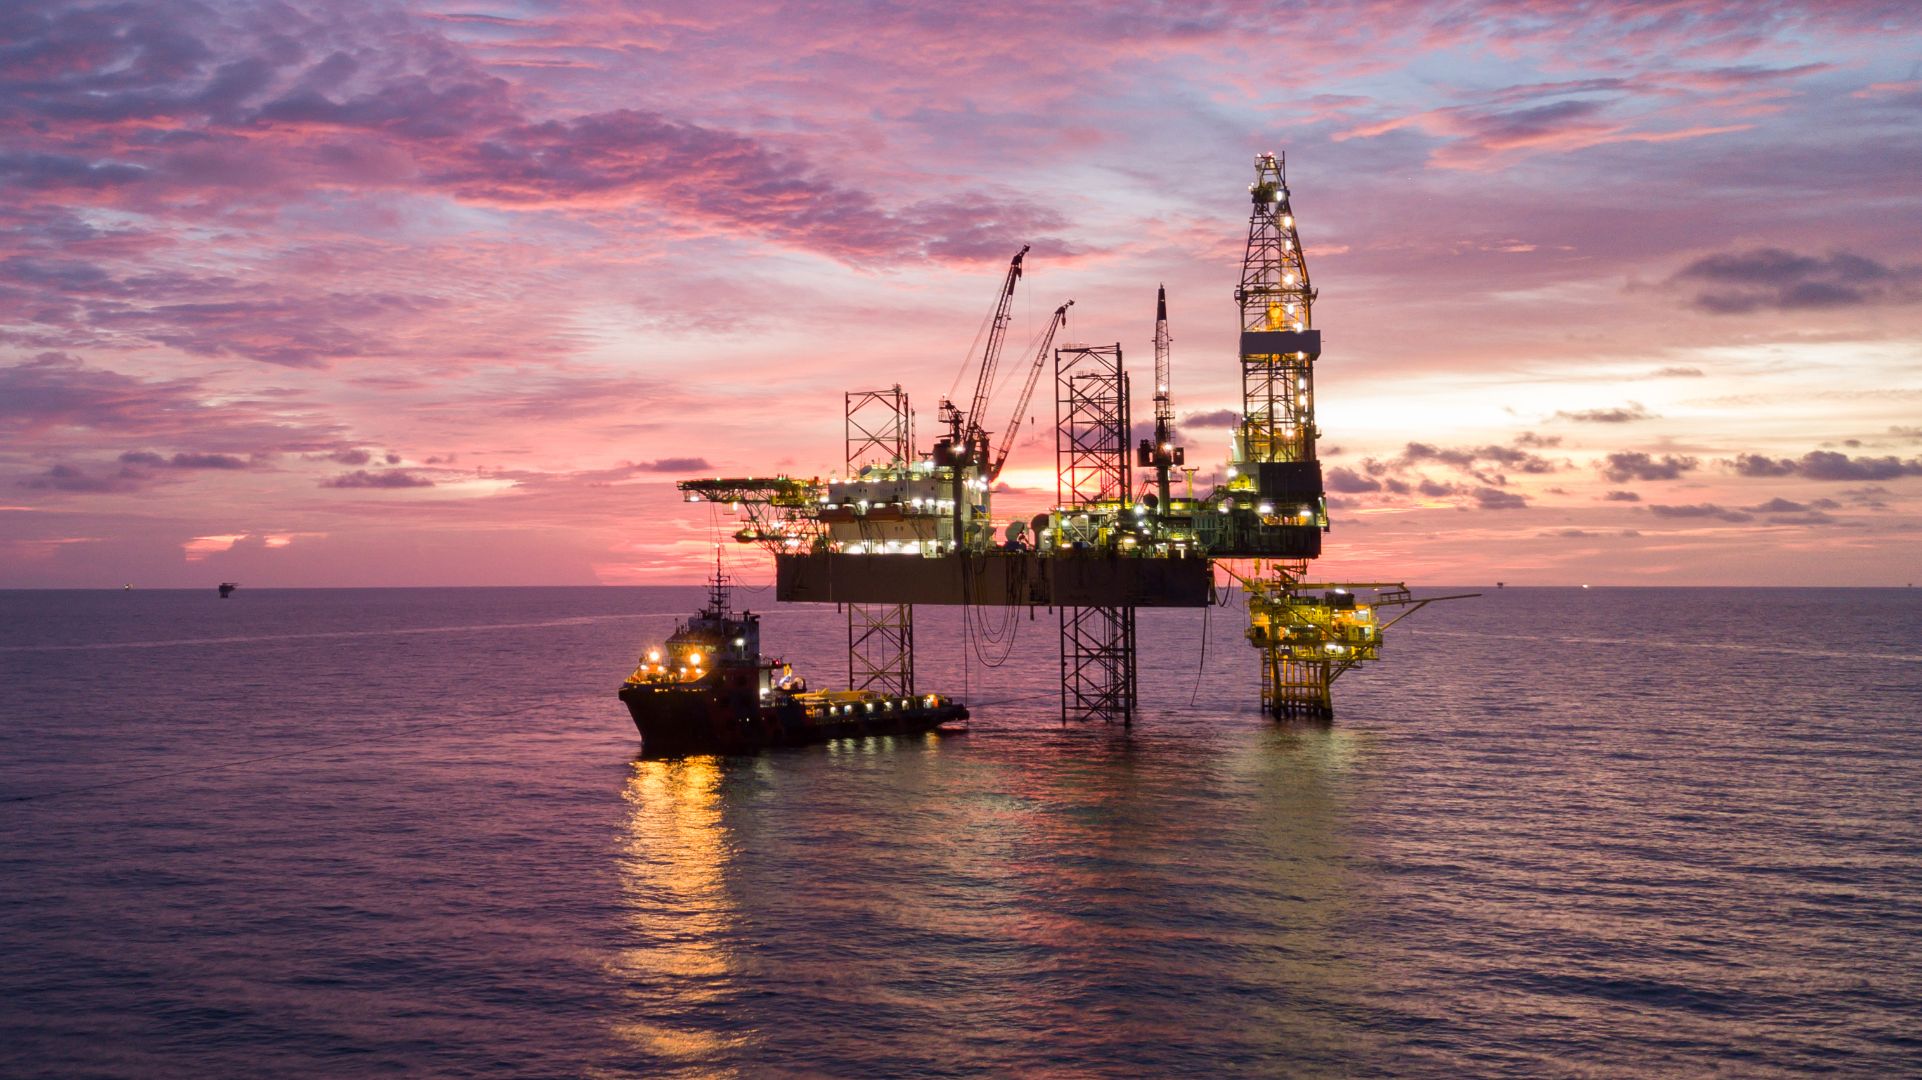 Navitas Petroleum has issued bonds